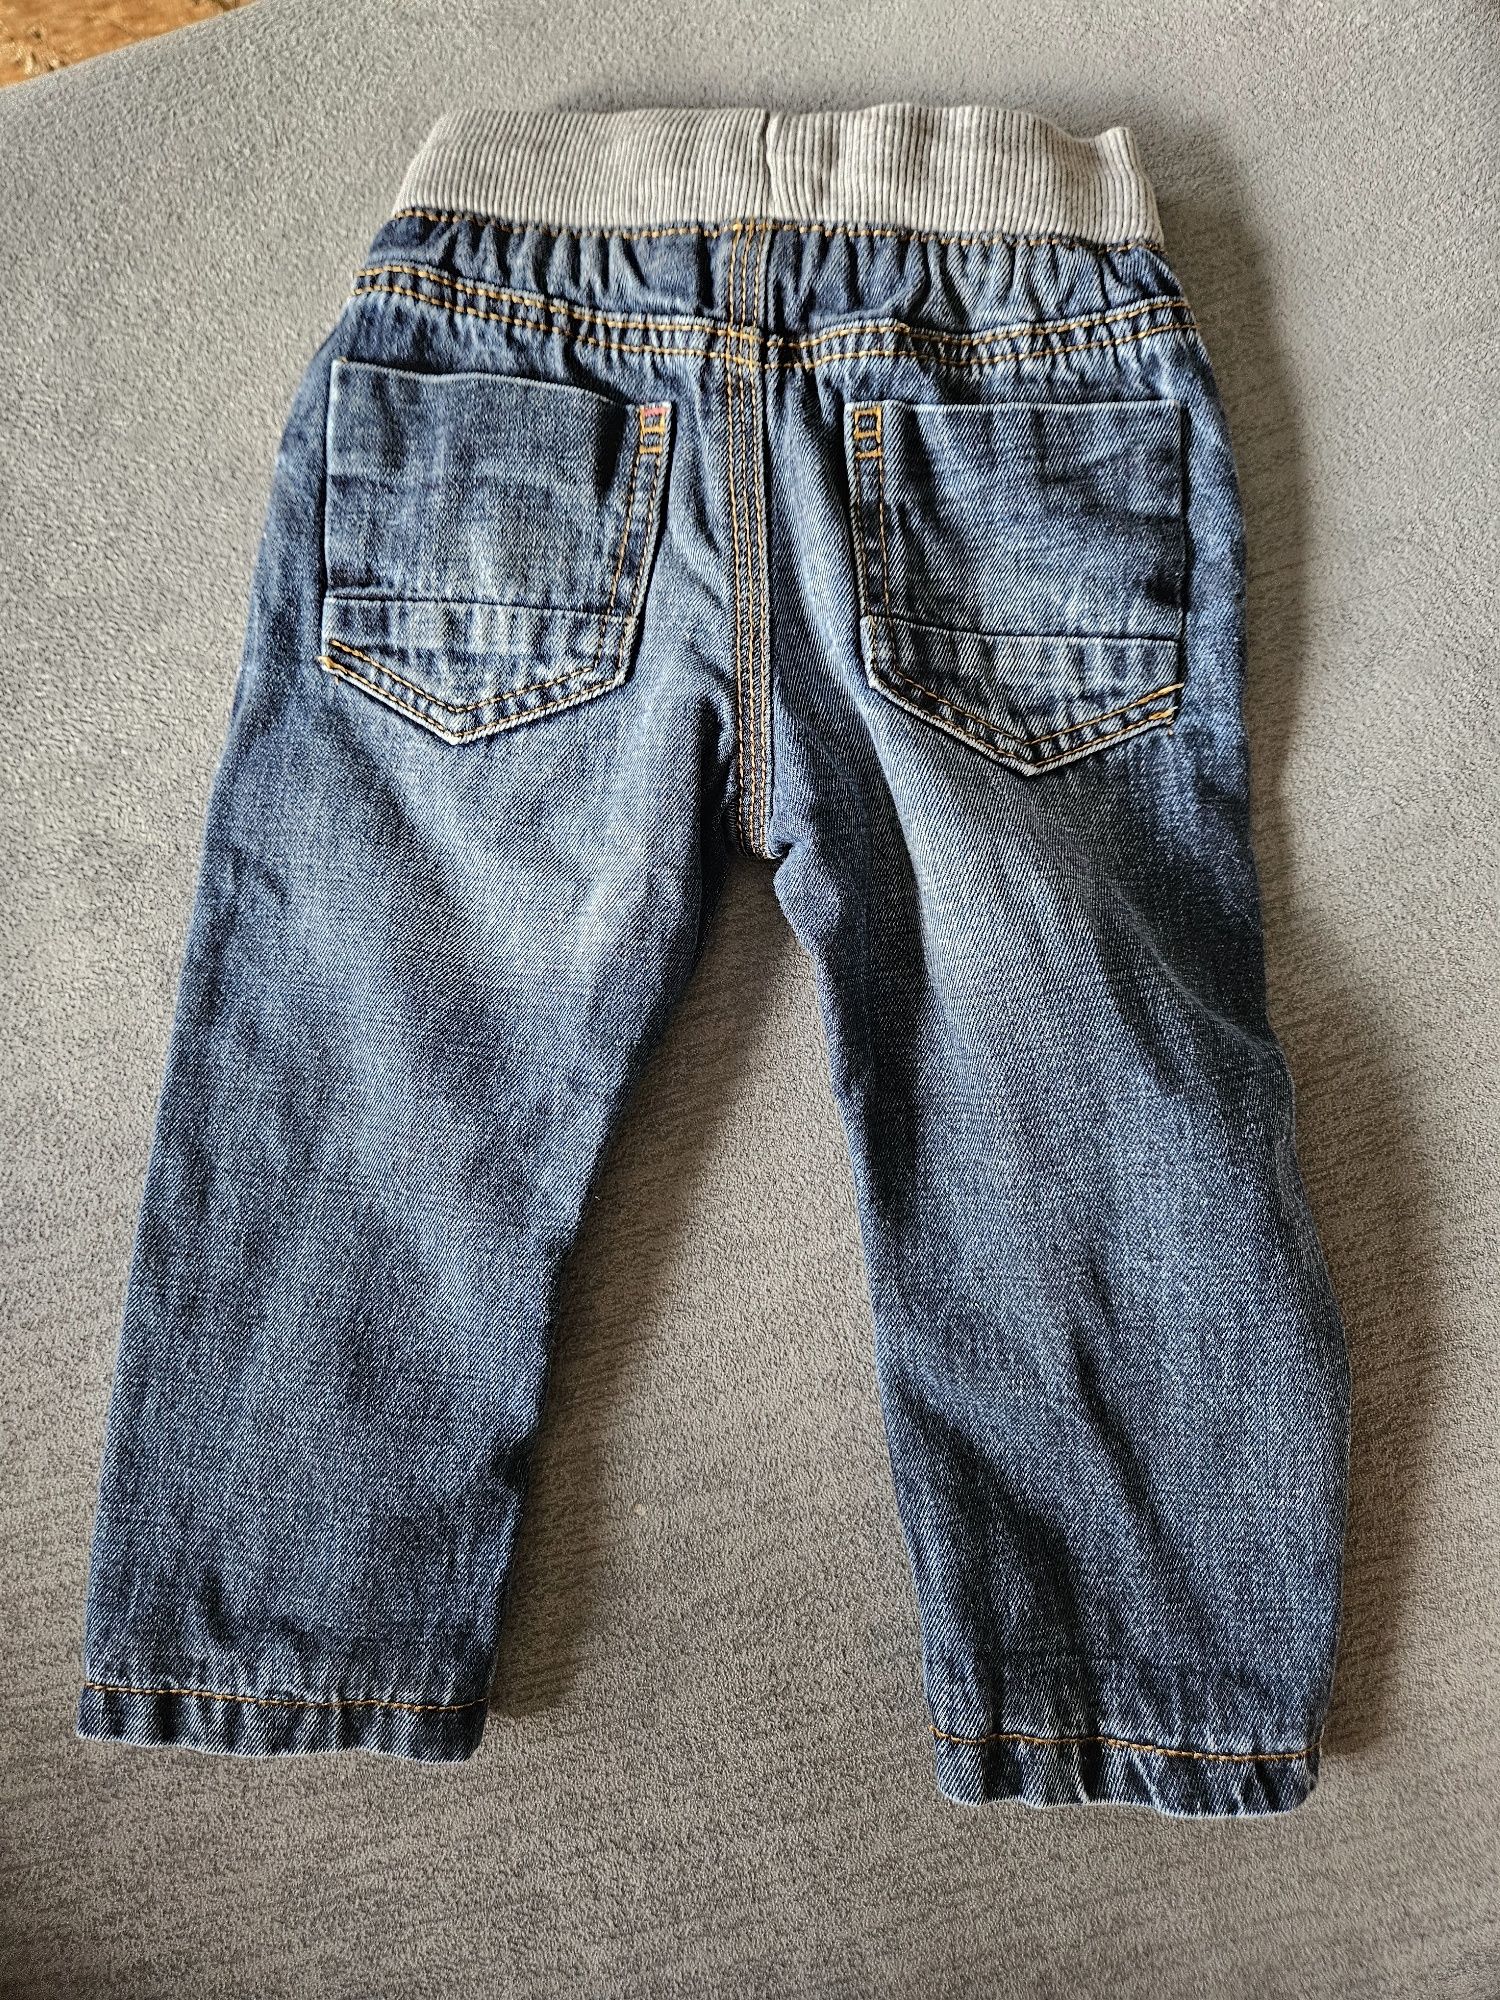 Chłopięce jeansy M&S. Rozmiar na 12-18 mscy